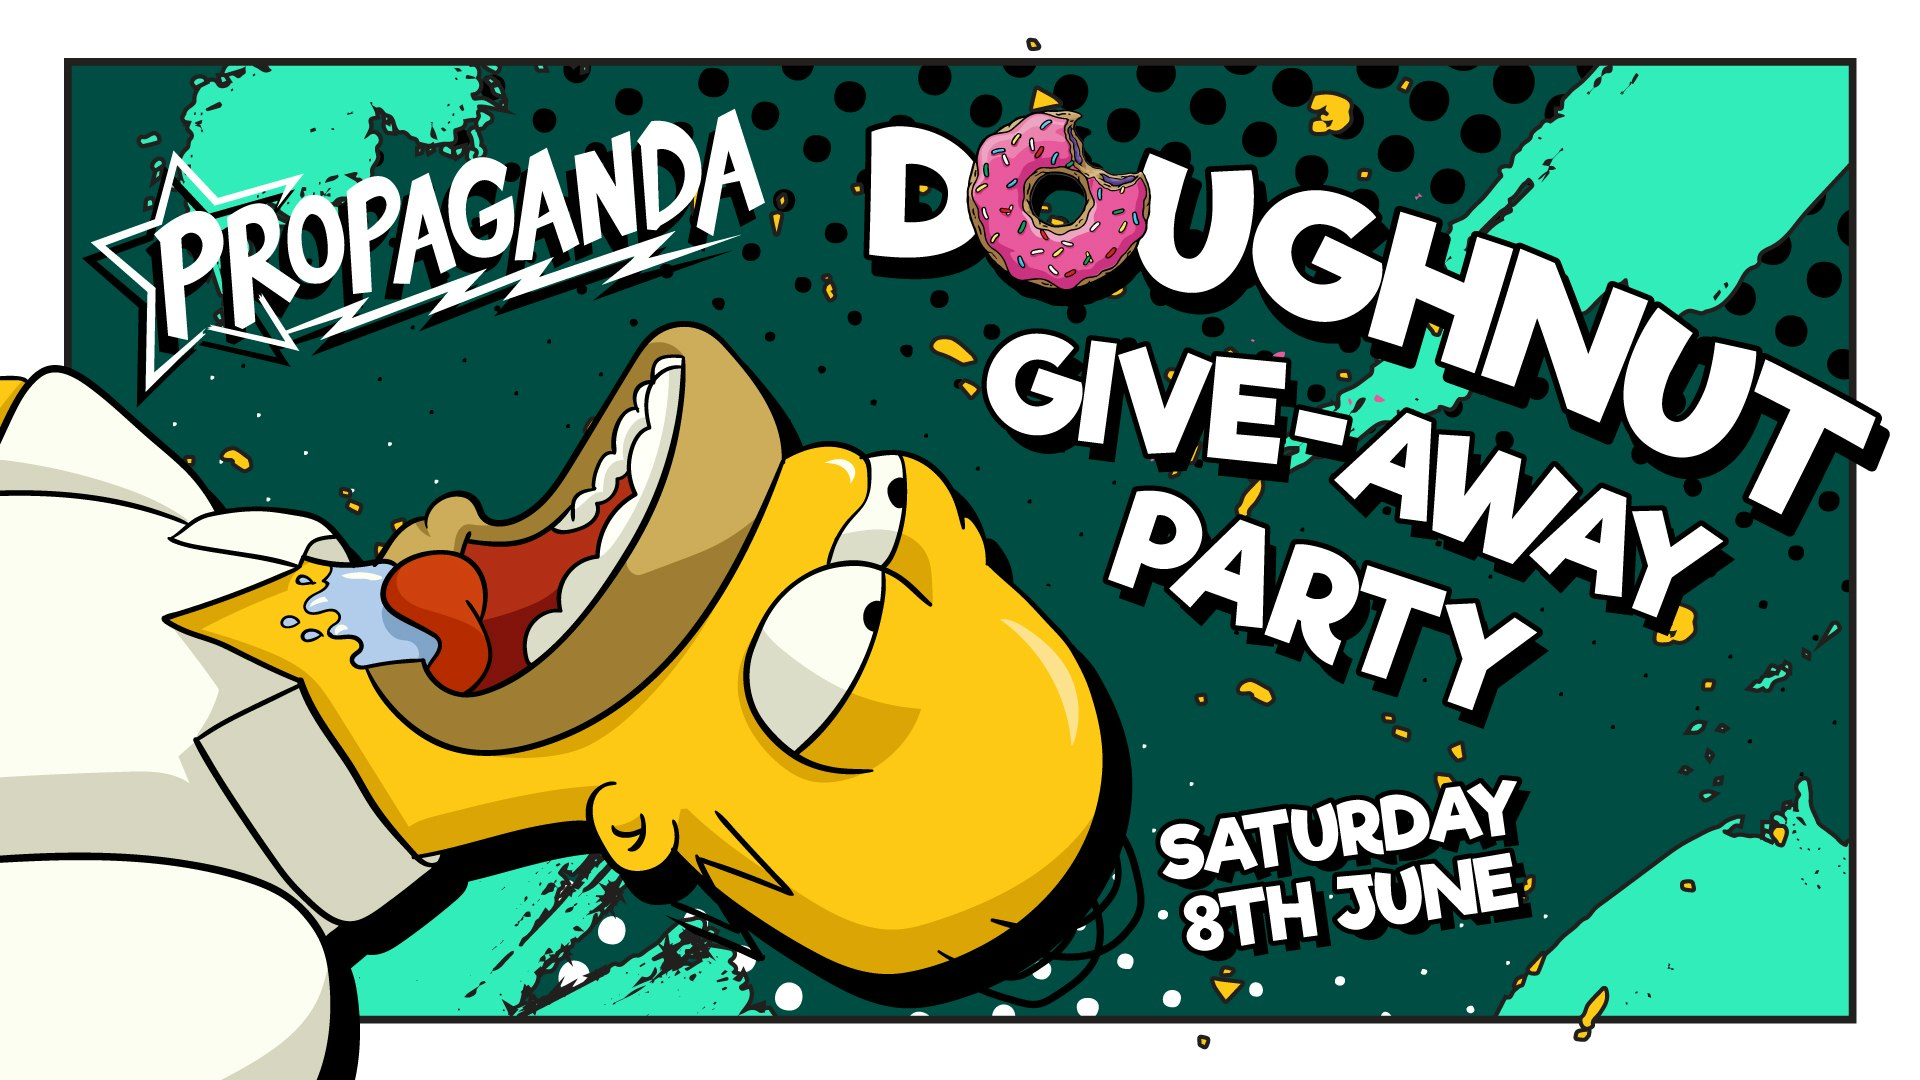 Propaganda Lincoln – Doughnut Party